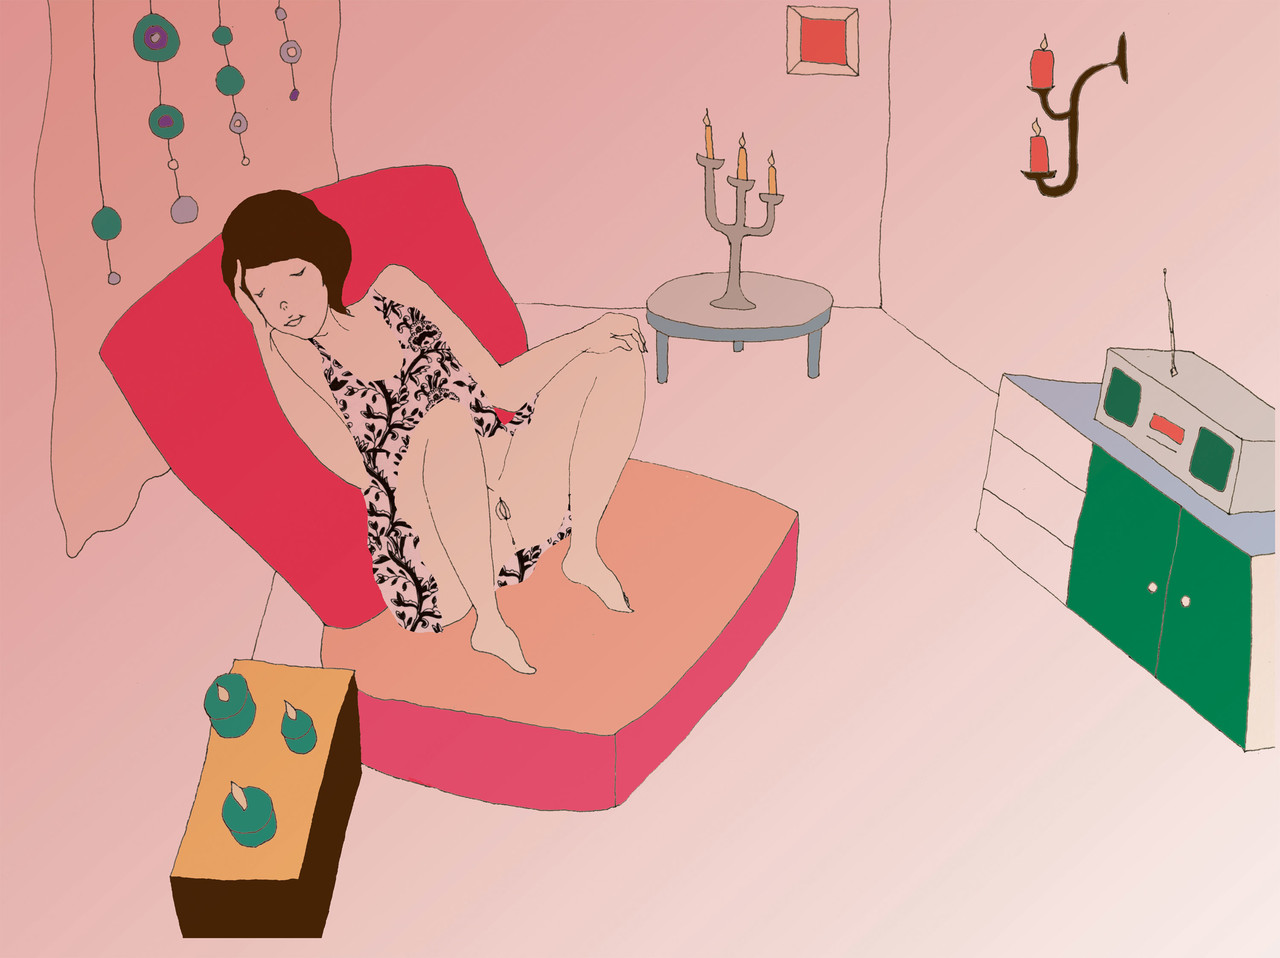 붉은 조명이 은은한 혼자만의 방 안에 한 여성이 편하게 쇼파에 기대어 있다. 촛불과 음악을 켜놓고 자위로 자신을 사랑하기 위한 준비를 하고 있다. 장애여성을 위한 성교육 교재 『장애여성공감 성을 밝히다』(2009) 삽화. ⓒ장애여성공감